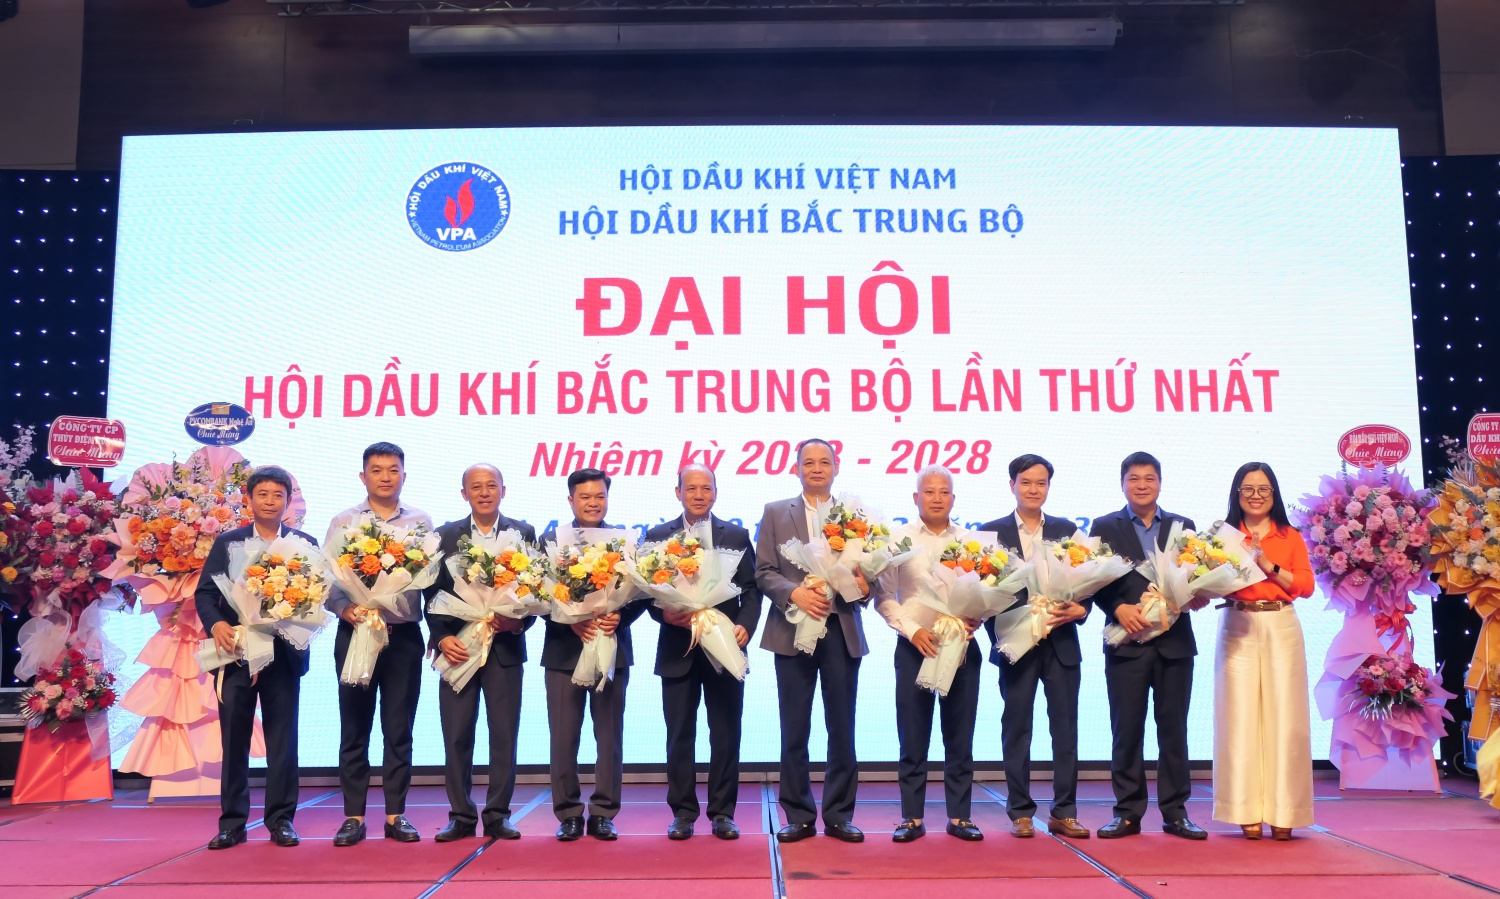 BCH Hội Dầu khí Bắc Trung Bộ nhiệm kỳ 2023-2028 ra mắt tại Đại hội